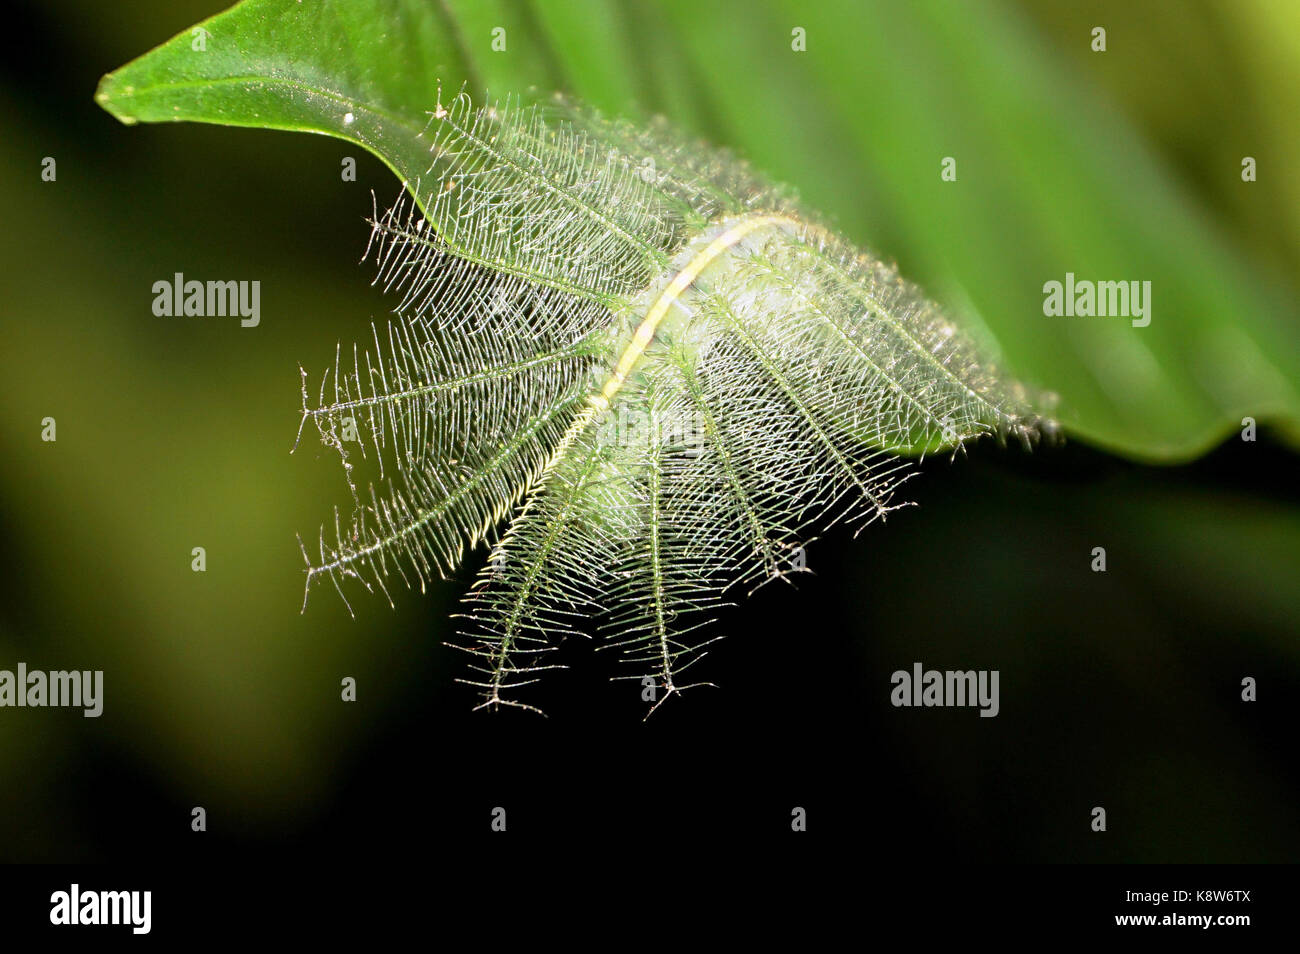 caterpillar stage of Euthalia aconthea gurdanature Stock Photo